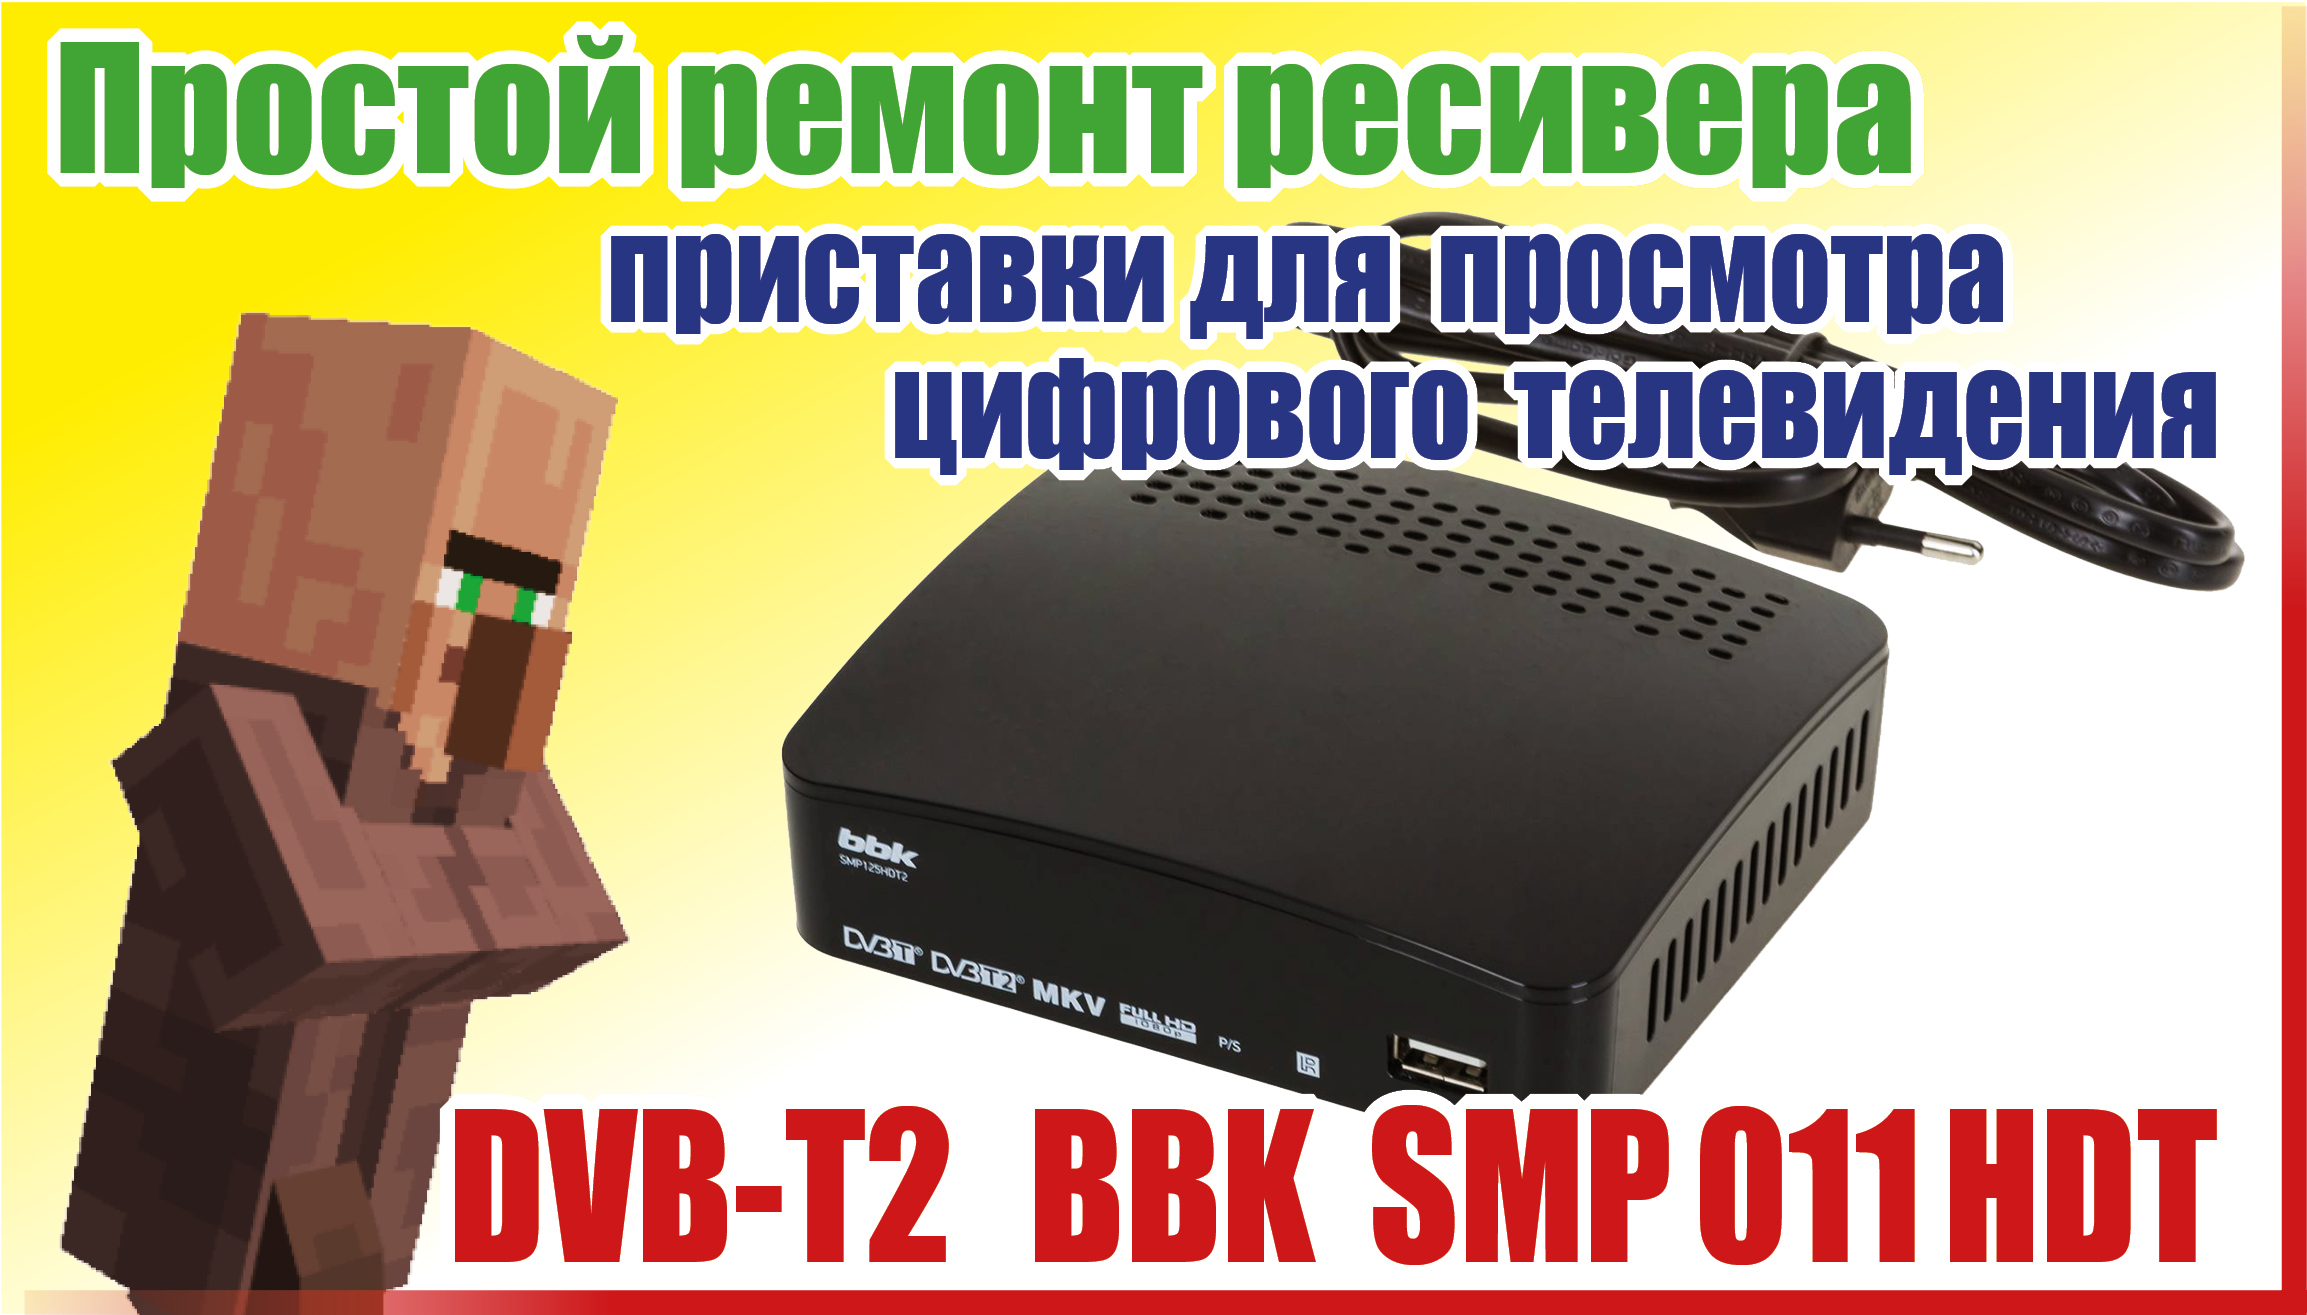 Простой ремонт ресивера - DVB-T2 BBK SMP 011 HDT